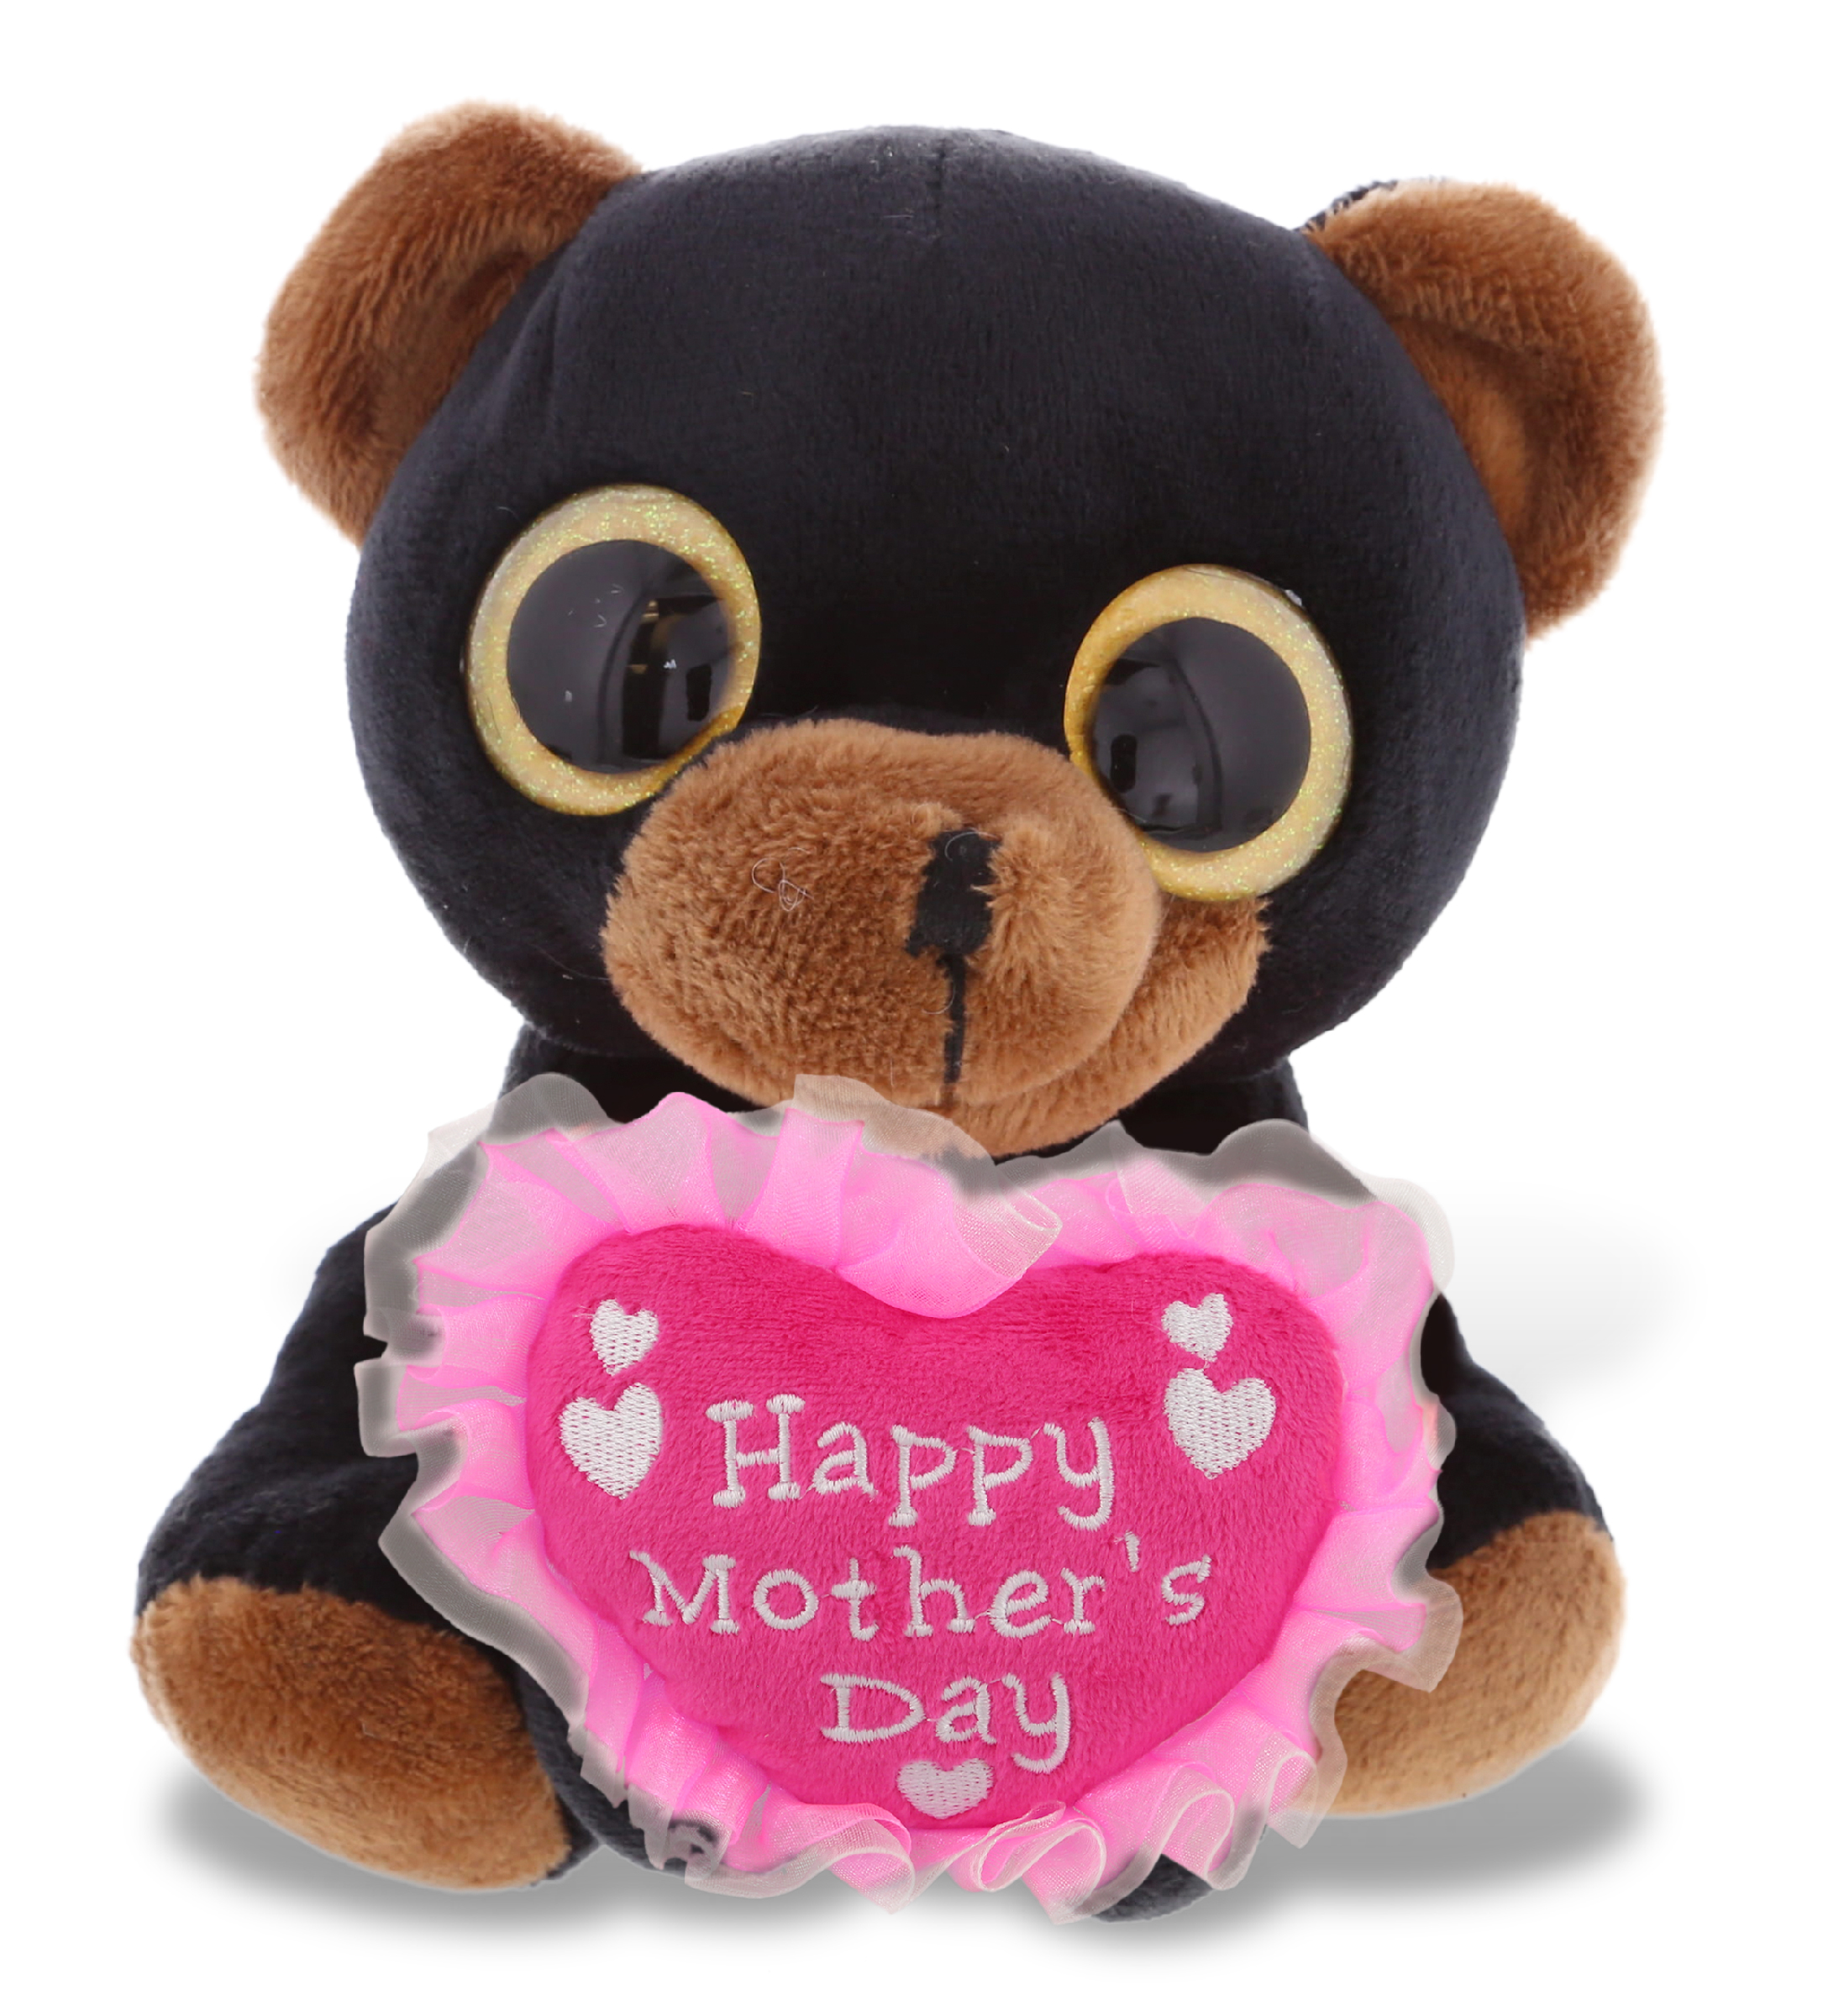 Cute Cuddly Soft Stuffed Teddy Bear w/ Message Hearts